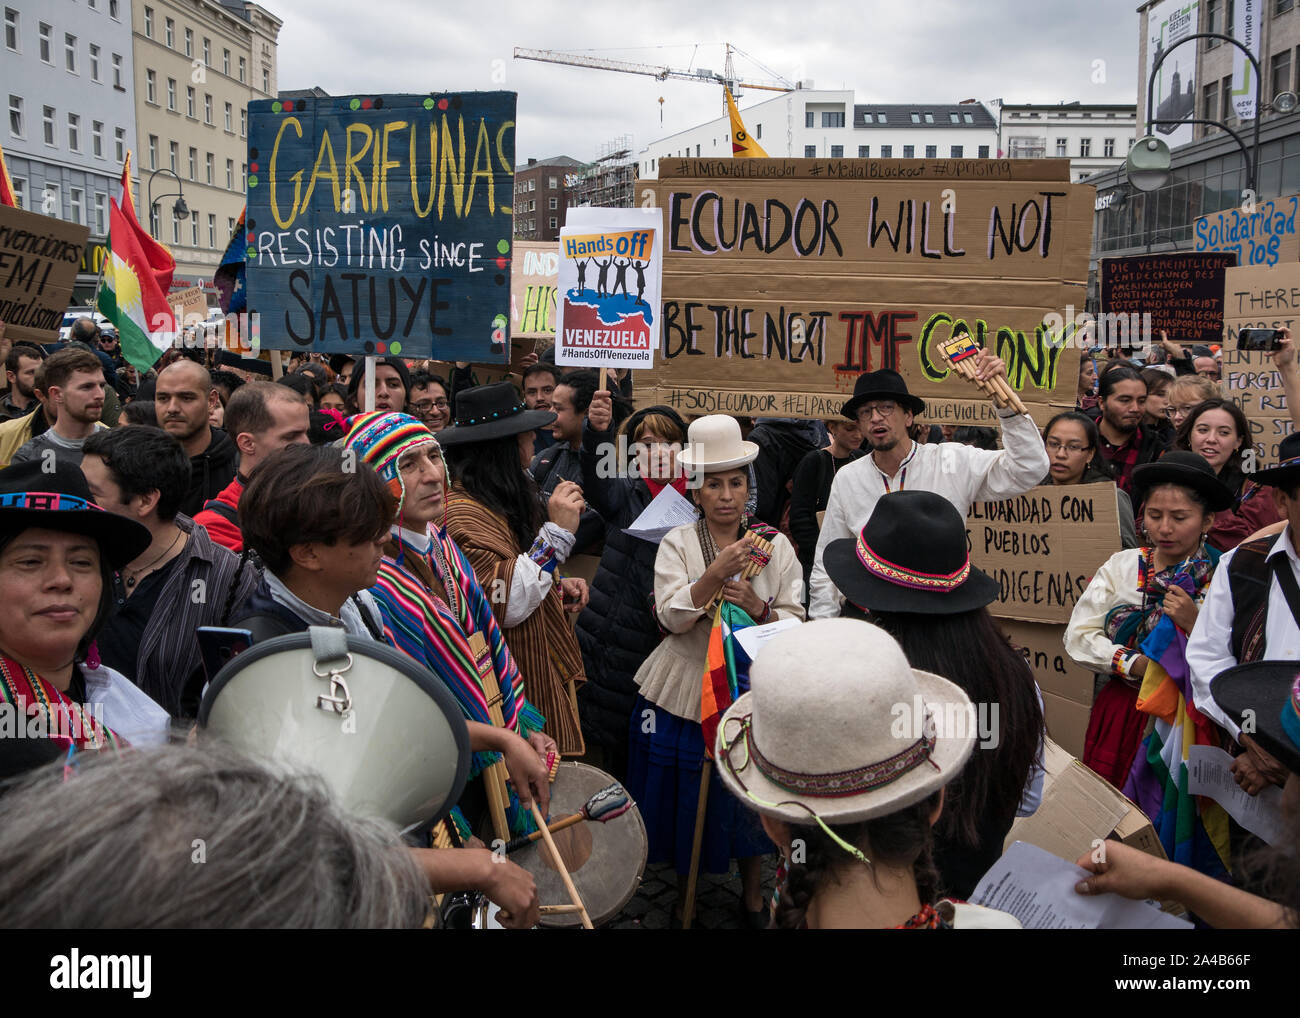 Démonstration et protester contre la politique du président Moreno en Equateur, foule de gens en vêtements traditionnels montrant des banderoles lors de la lecture de musique Banque D'Images